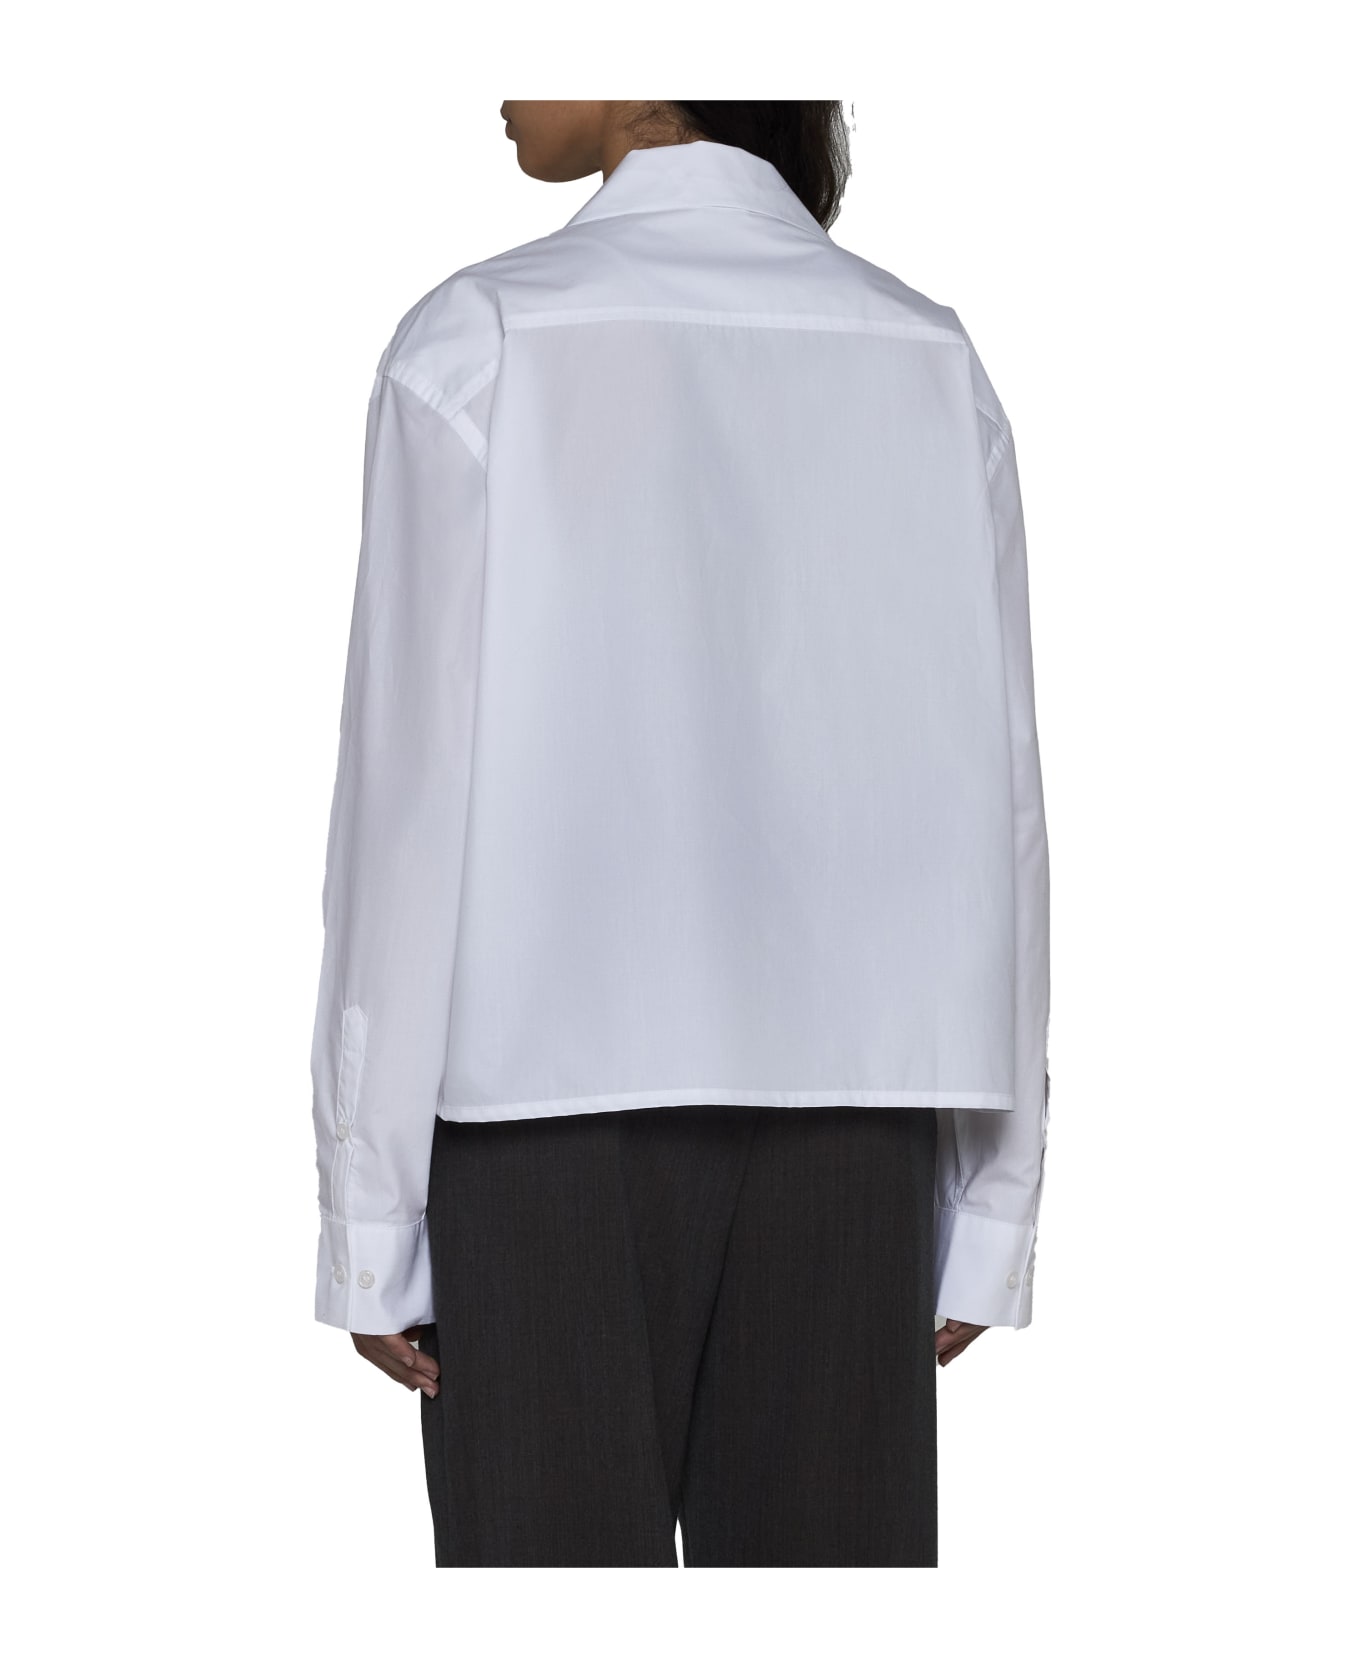 Filippa K Shirt - White シャツ